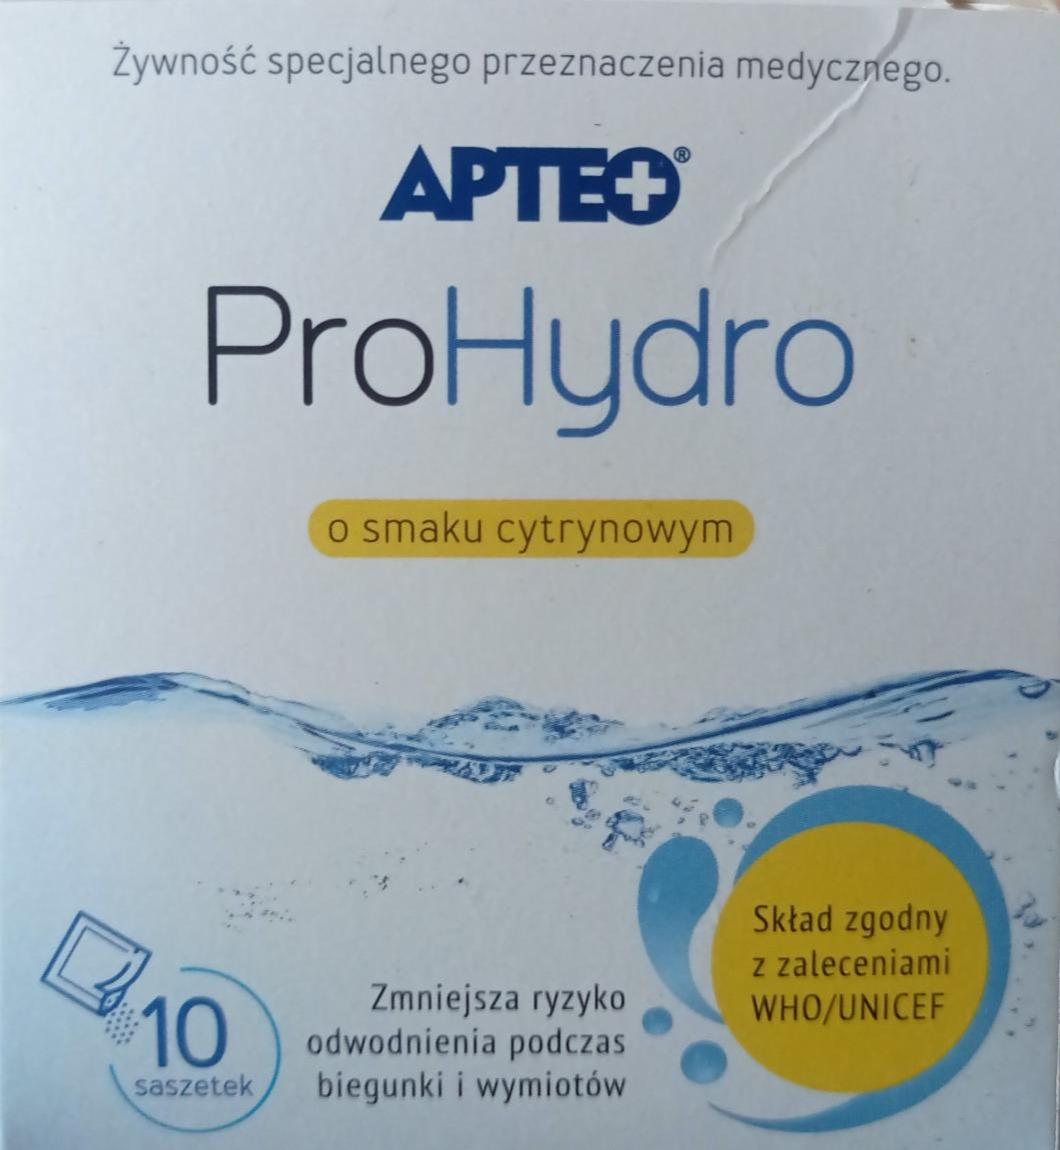 Zdjęcia - Prohydro o smaku cytrynowym APTEO